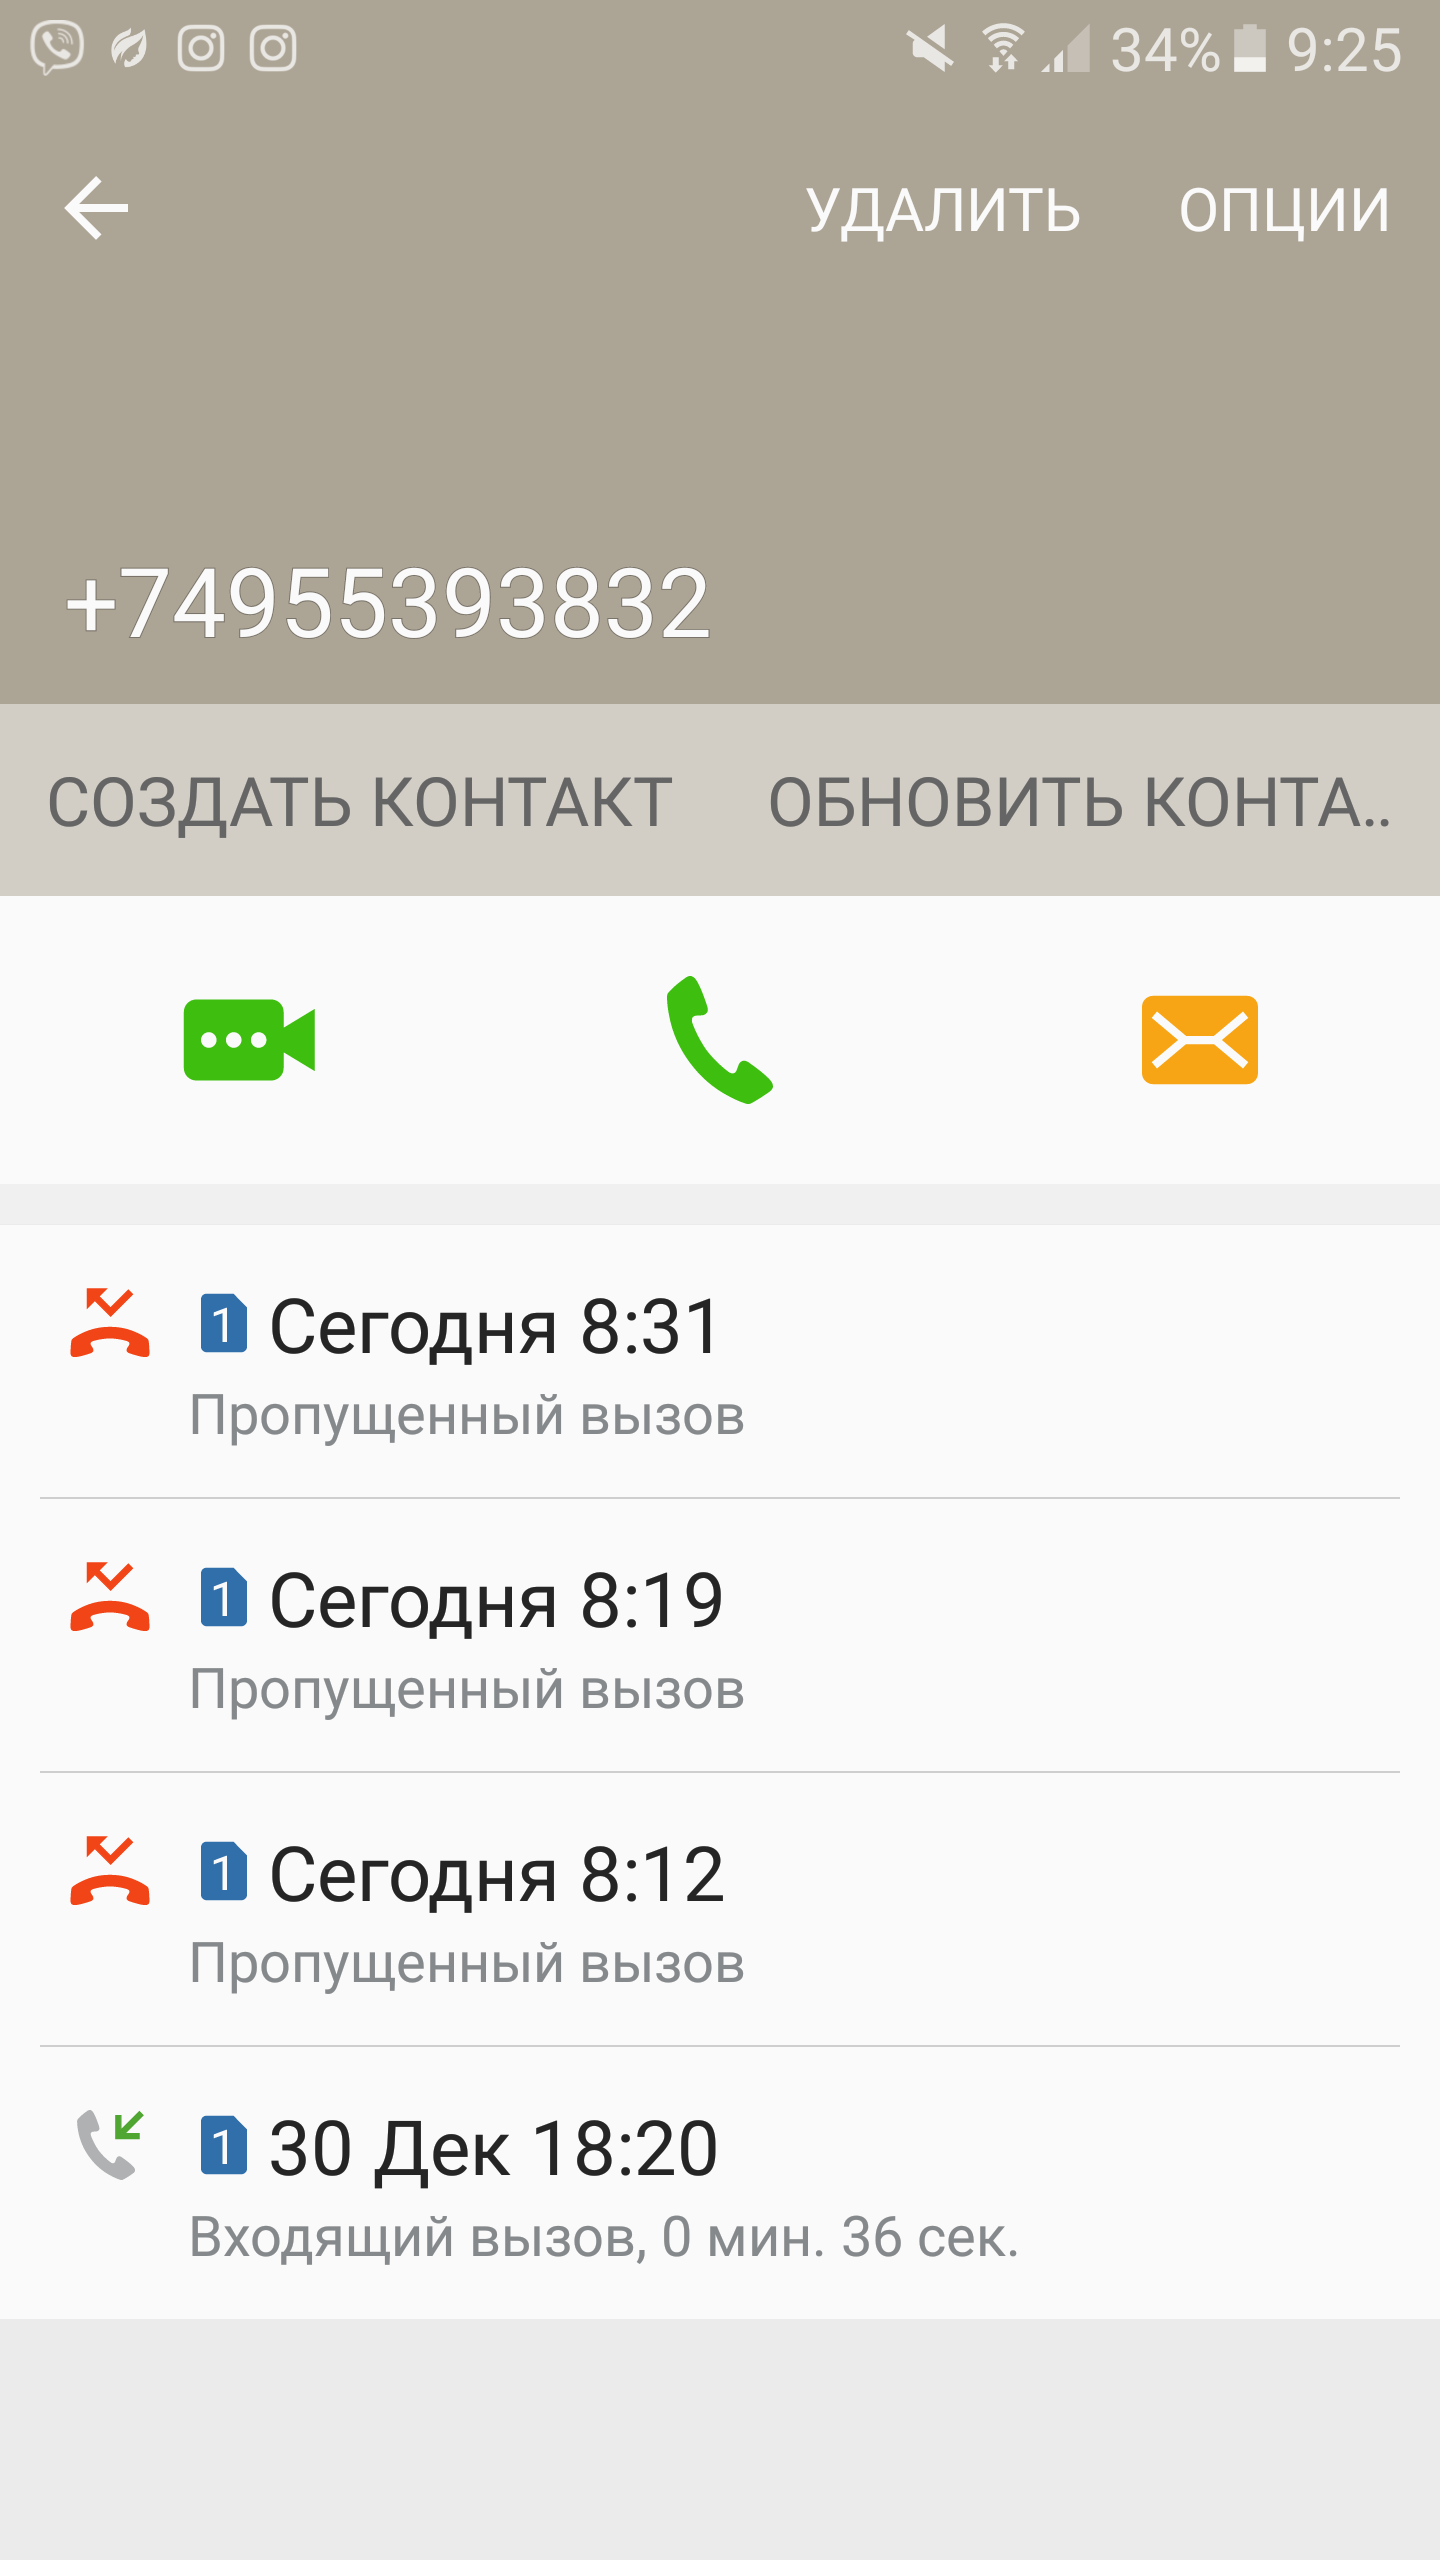 Саяногорск Инфо - screenshot_20170112-092530.png, Скачано: 294